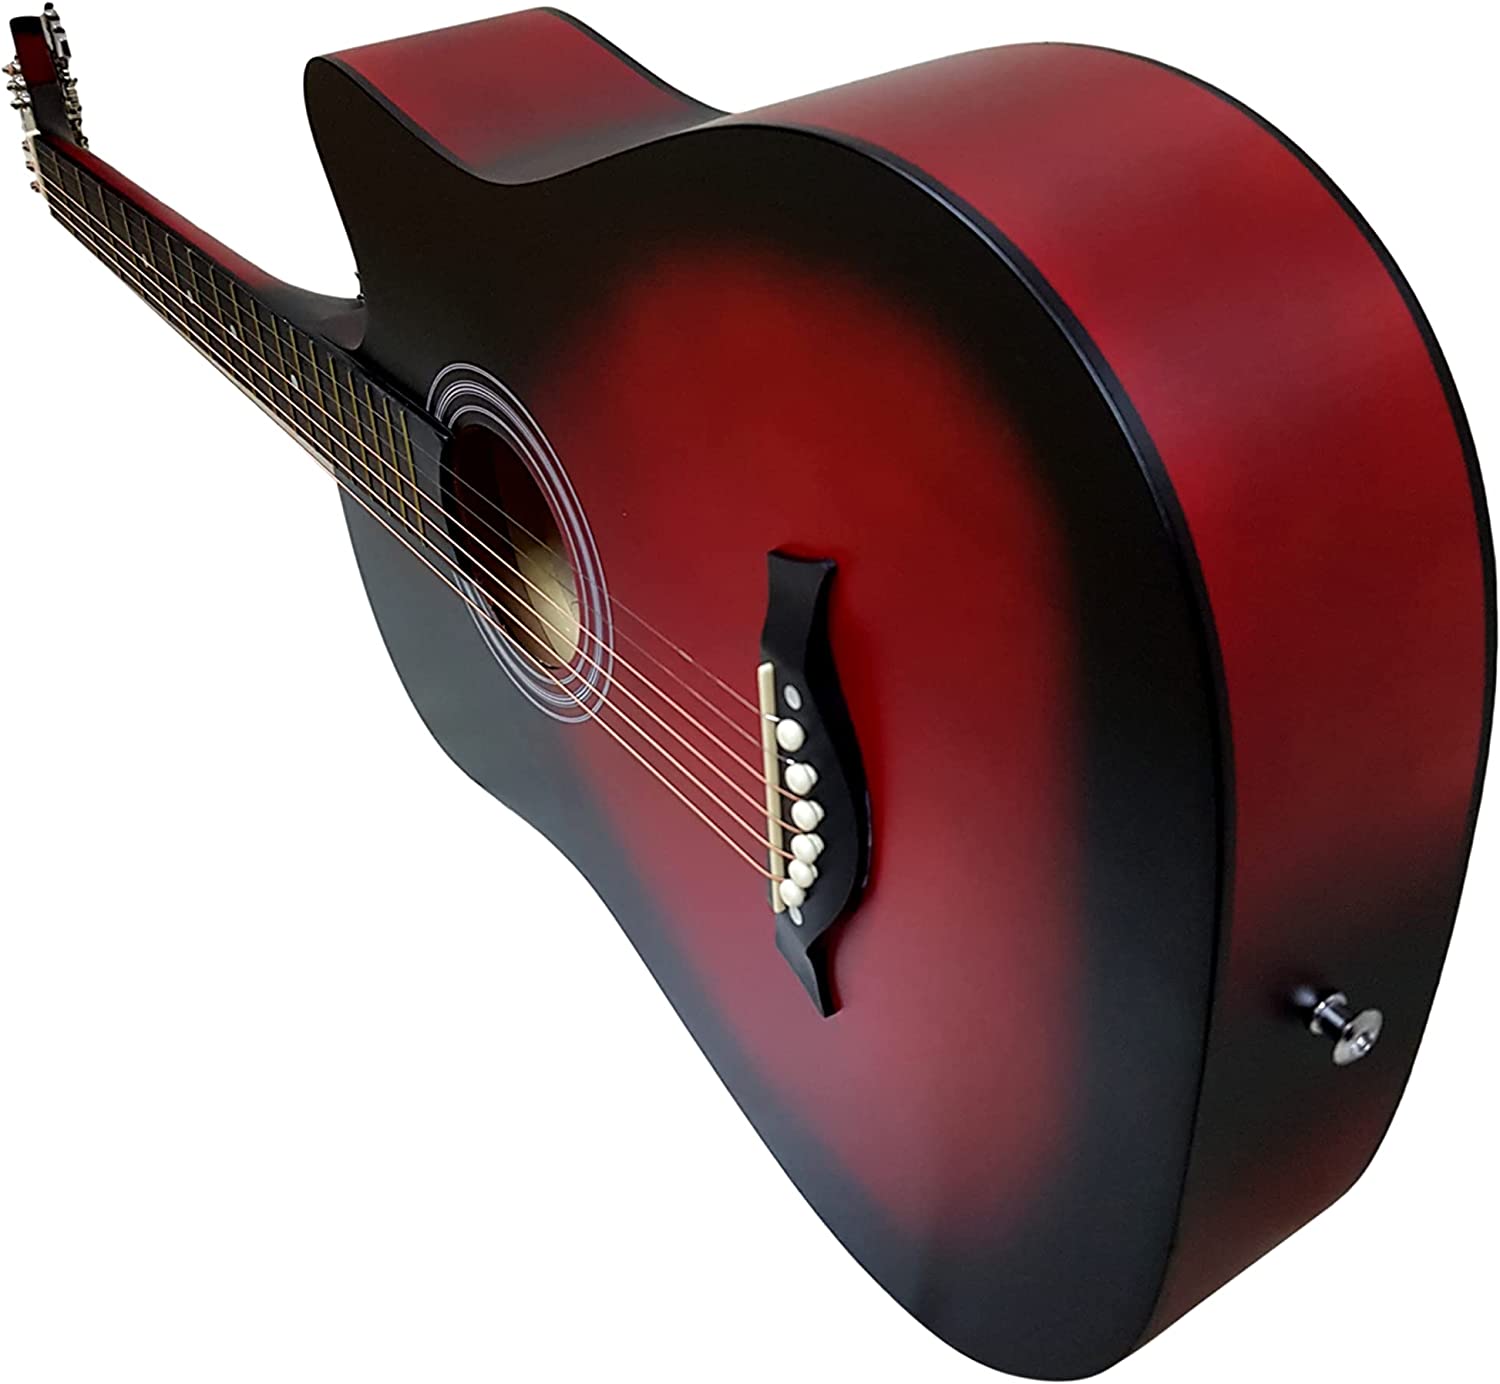 گیتار آکوستیک 38 Heartbeat Acoustic Guitar Solid Wood - ارسال ۱۰ الی ۱۵ روز کاری